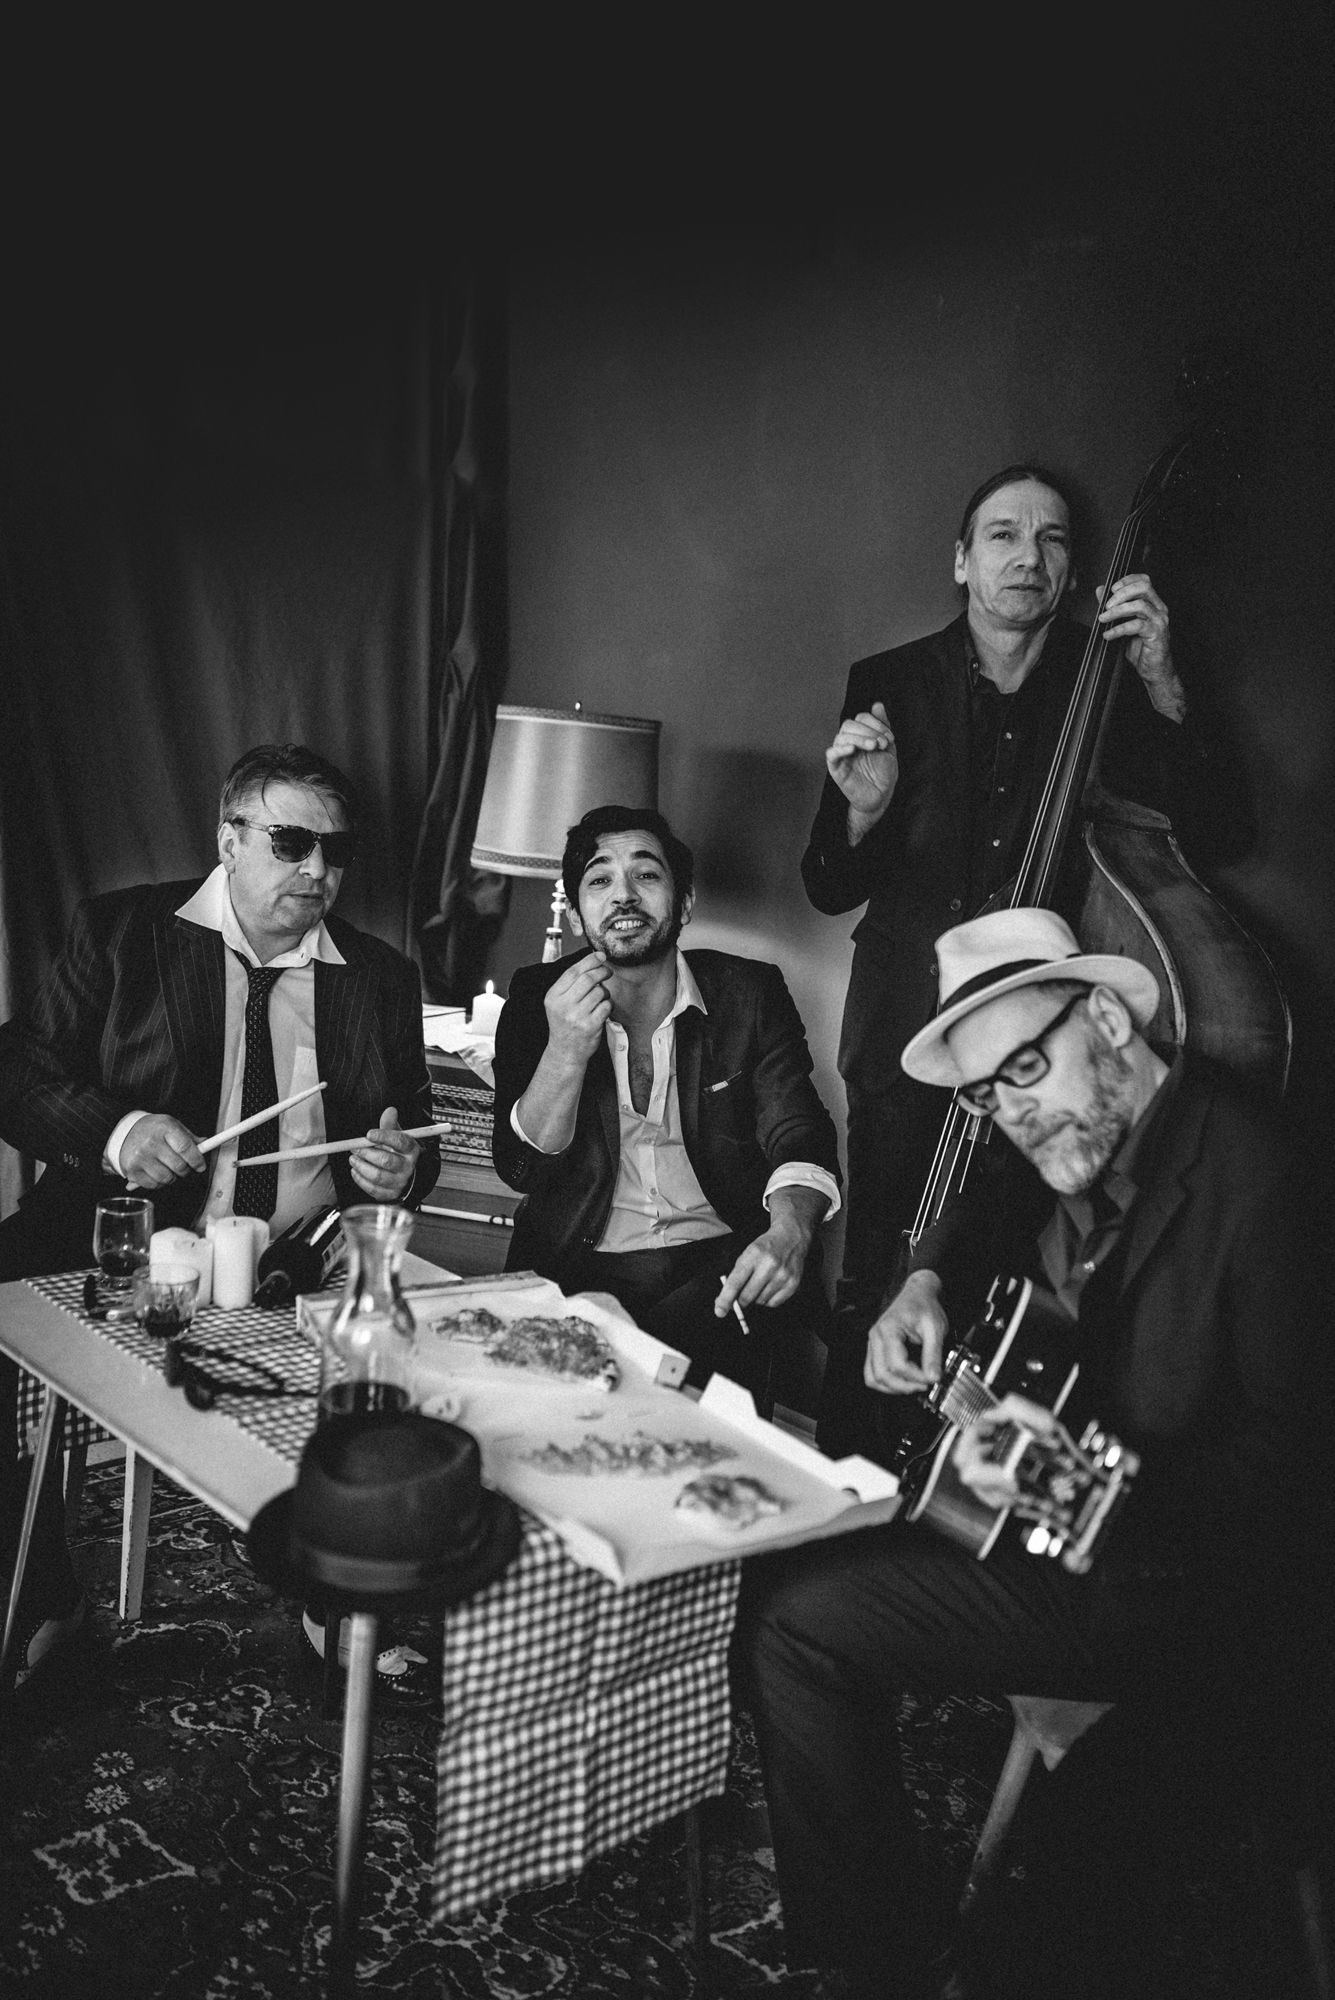 Quartetto Corleone Italienische Liveband RocknRollband Livemusik mit italienischen Klassikern Hochzeitsband